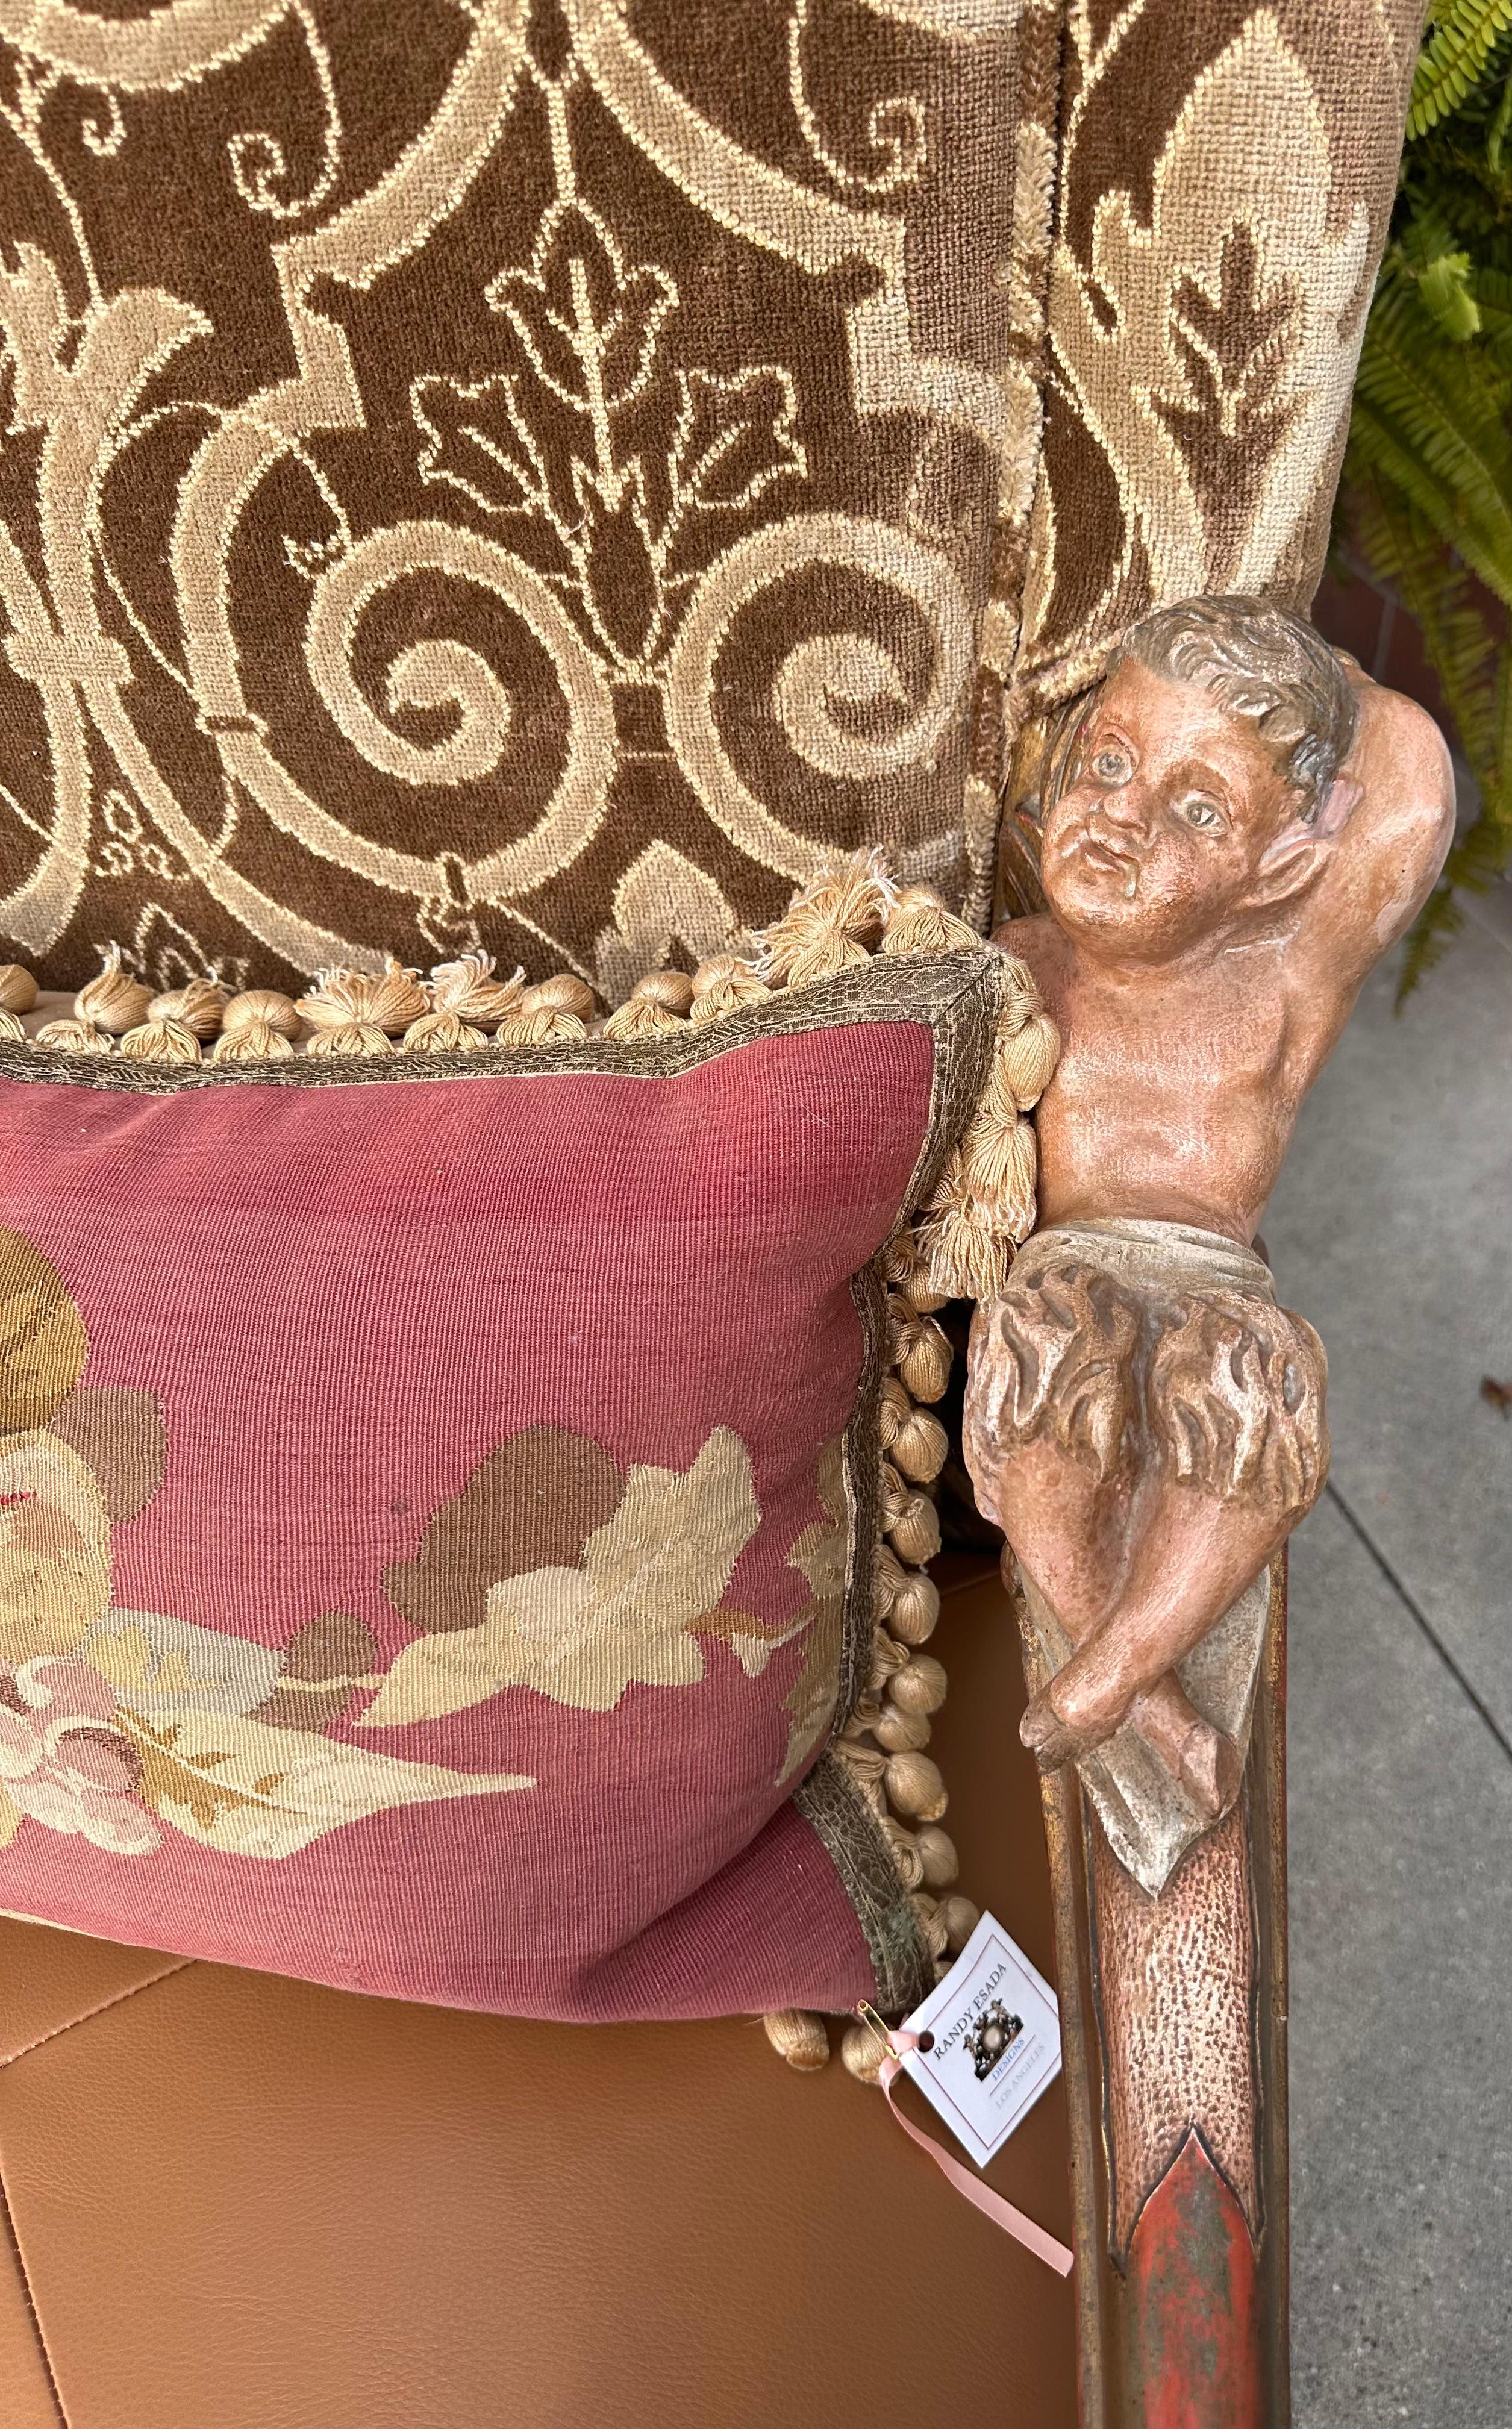 Ancienne A.I.C C. Baroque vénitienne, chaise à trône à bras sculptés d'après Andrea Brustolon. Il présente des détails sculptés élaborés avec une finition polychrome et en bois doré. Fraîchement revêtu de velours Scalamandre et de cuir, il comprend